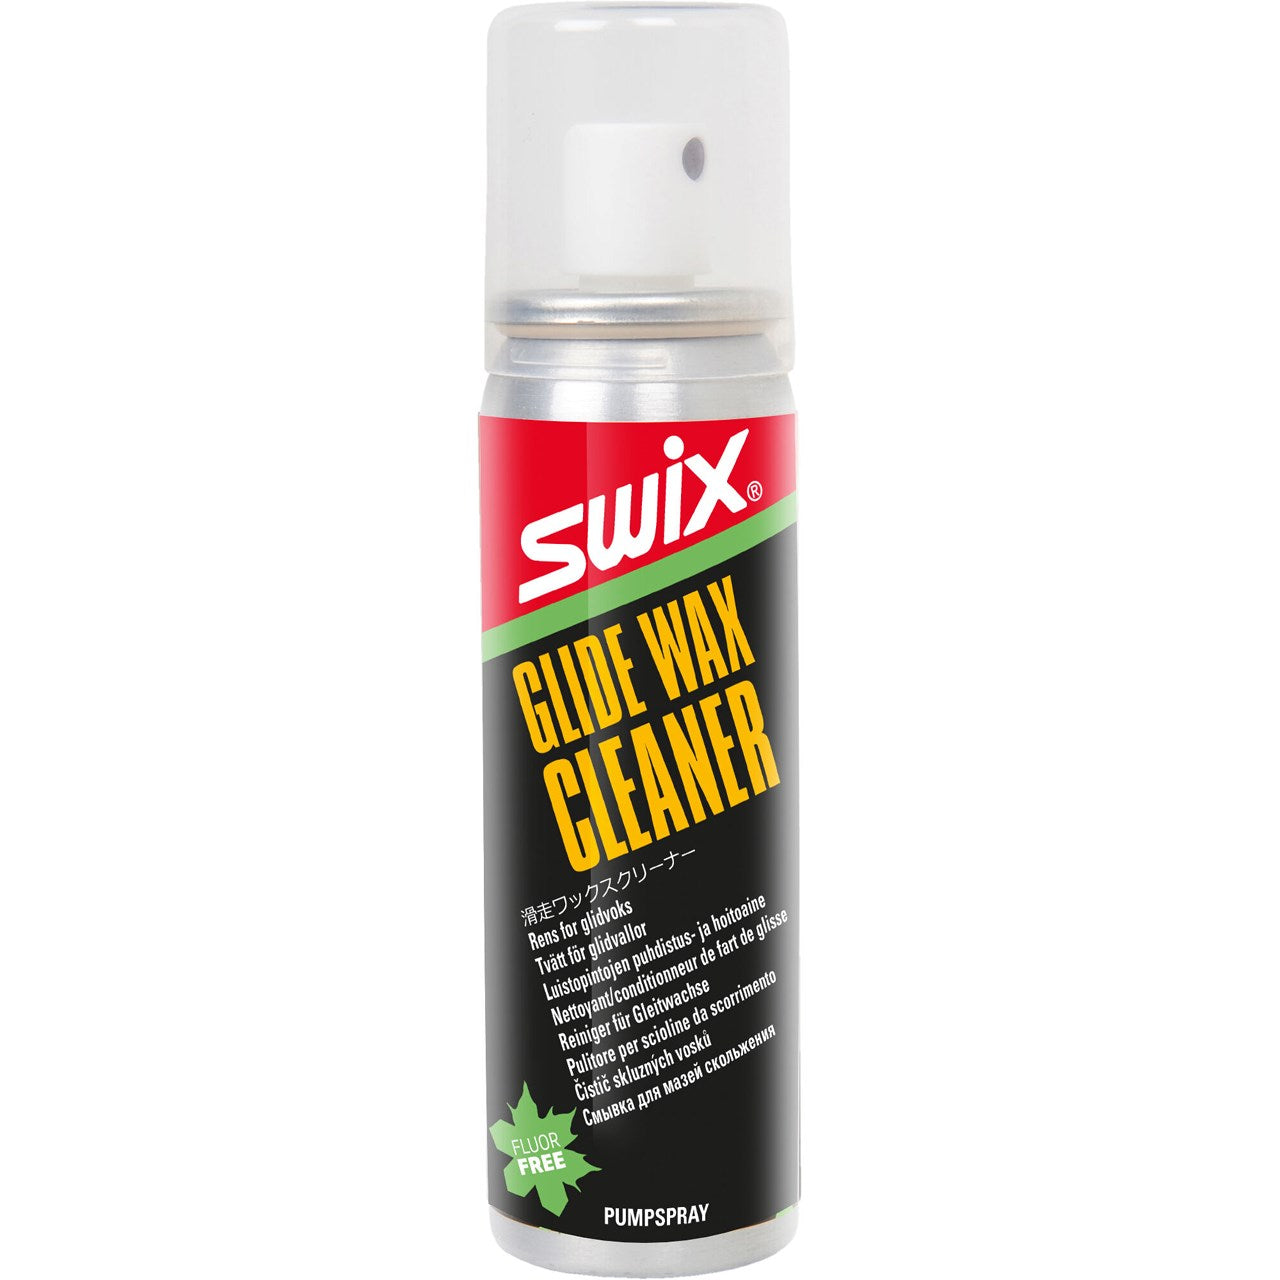 Swix Suksivoiteet Glide Wax Cleaner, 70ml Treeline Outdoors